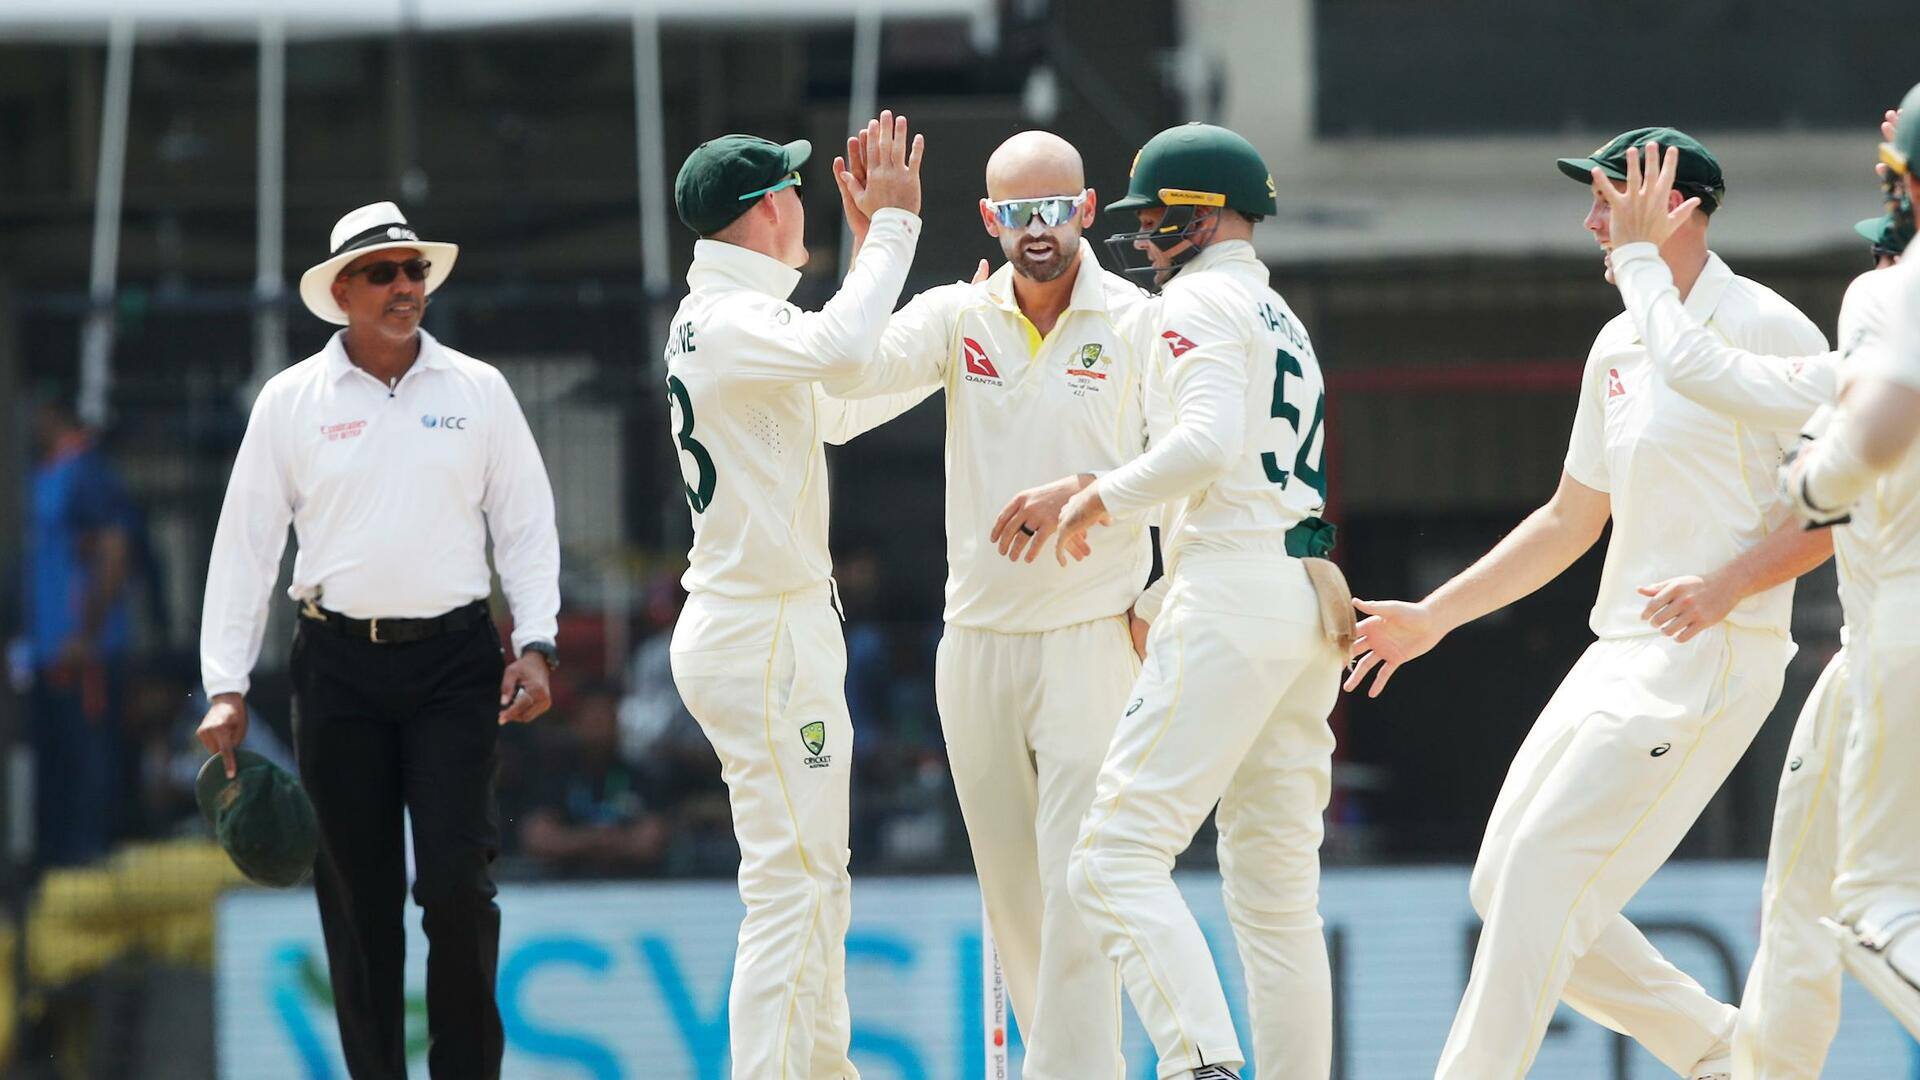 बॉर्डर-गावस्कर ट्रॉफी: ऑस्ट्रेलिया ने विश्व टेस्ट चैंपियनशिप के फाइनल में किया प्रवेश, जानिए भारत की स्थिति 